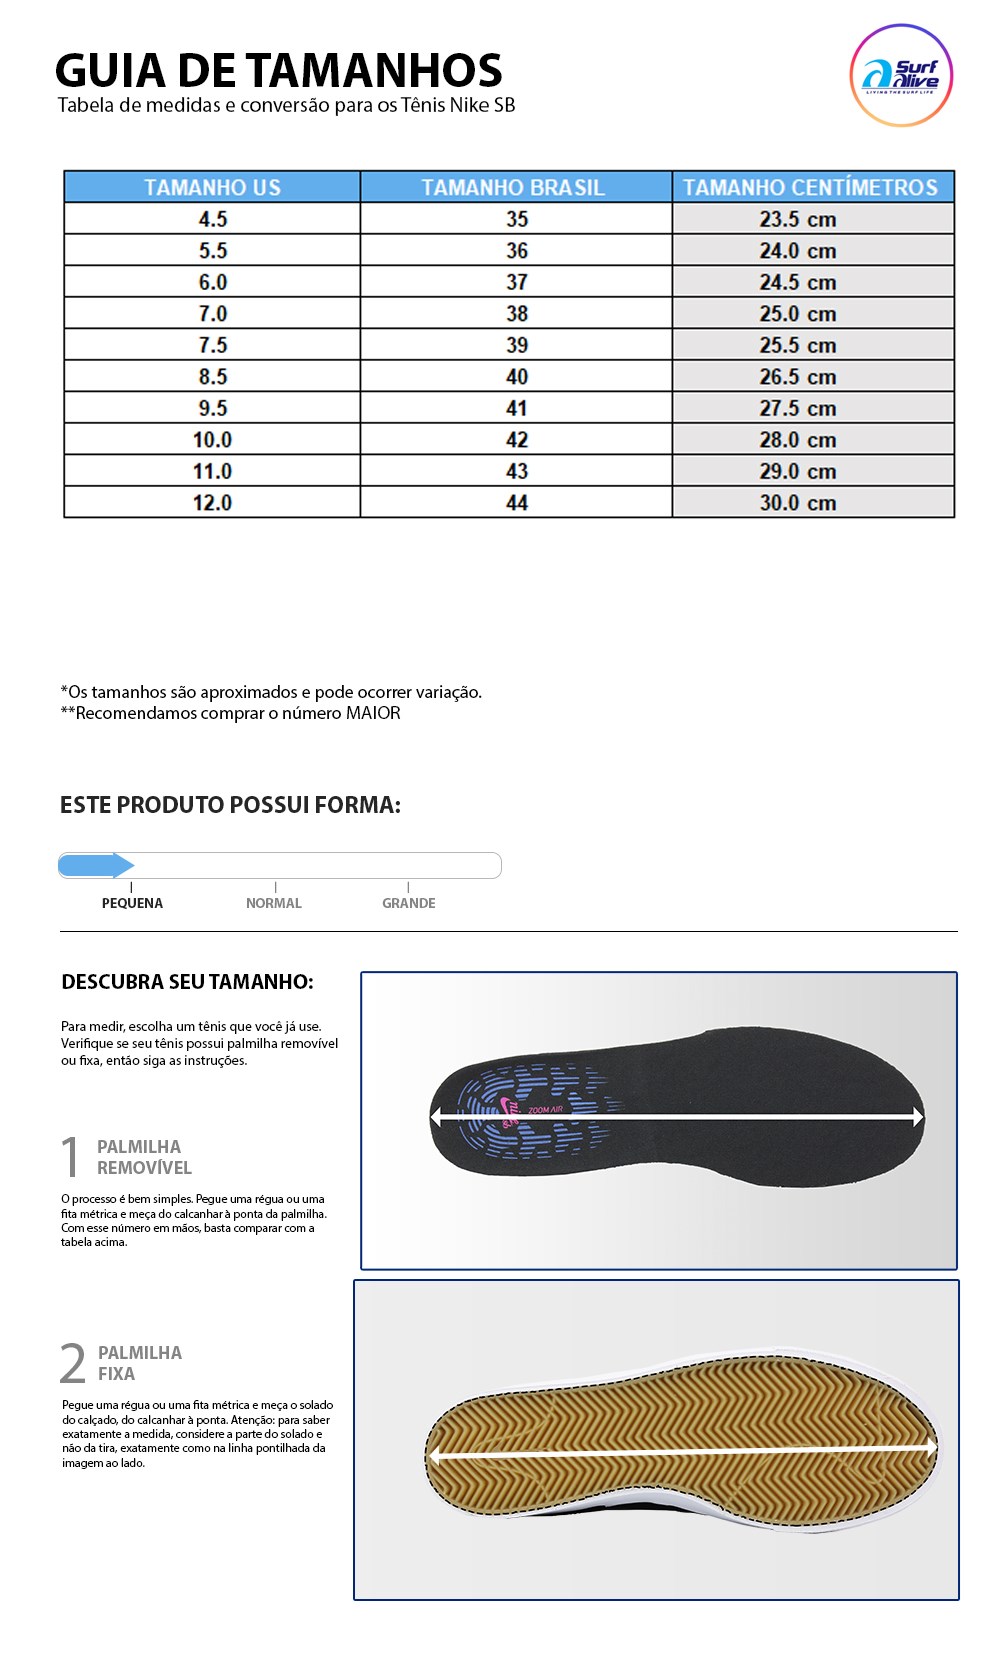 Tabela de medidas e conversão para os tênis Nike SB